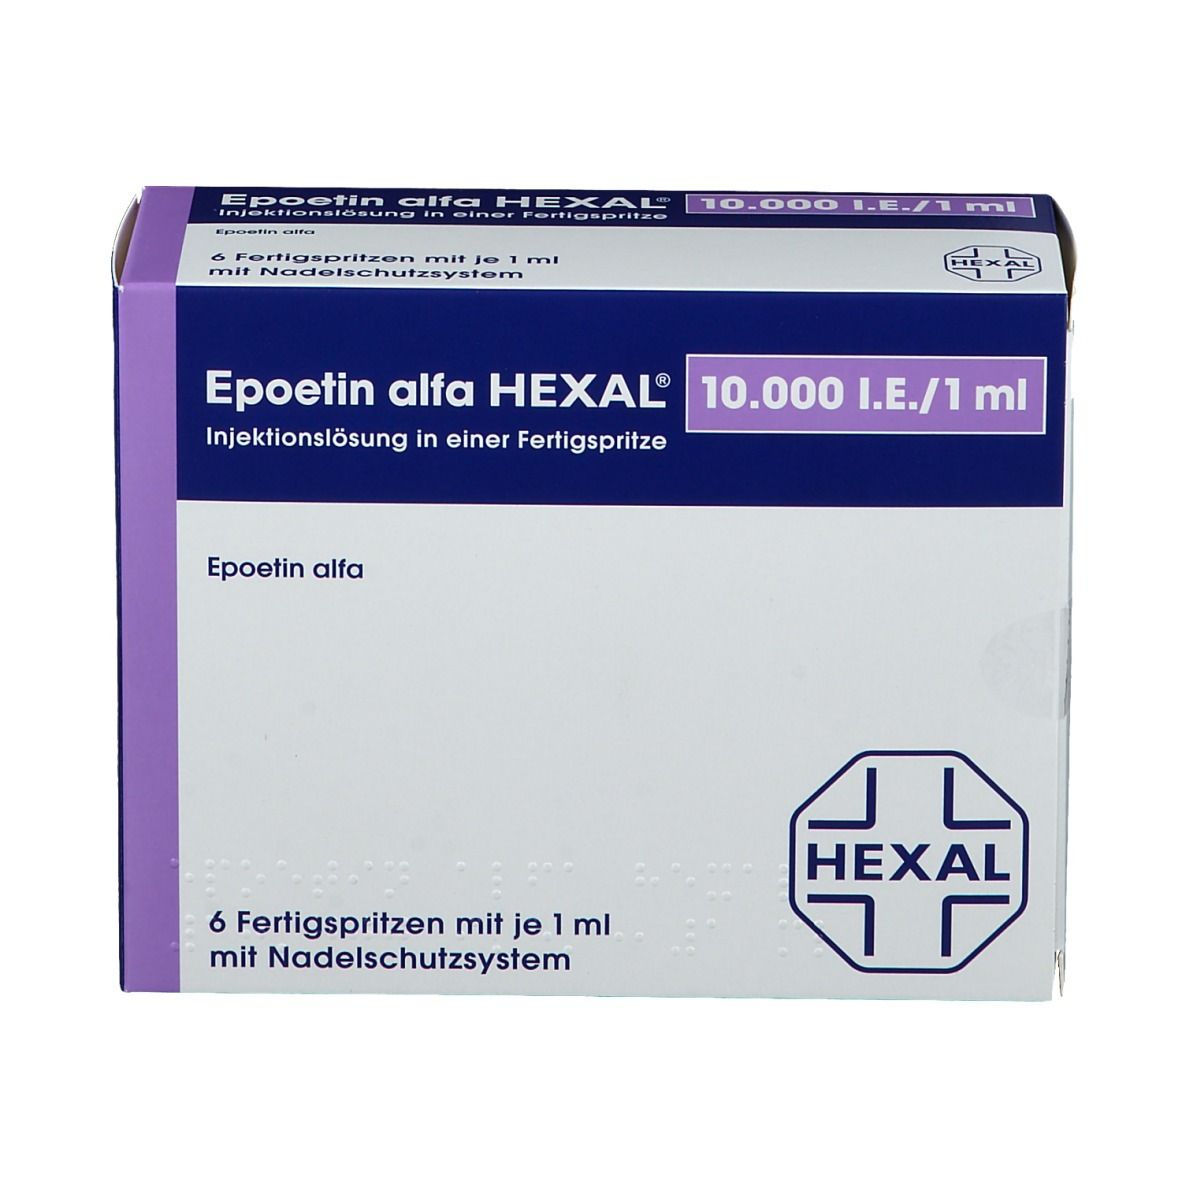 Epoetin alfa HEXAL® 10.000 I.E./1 ml